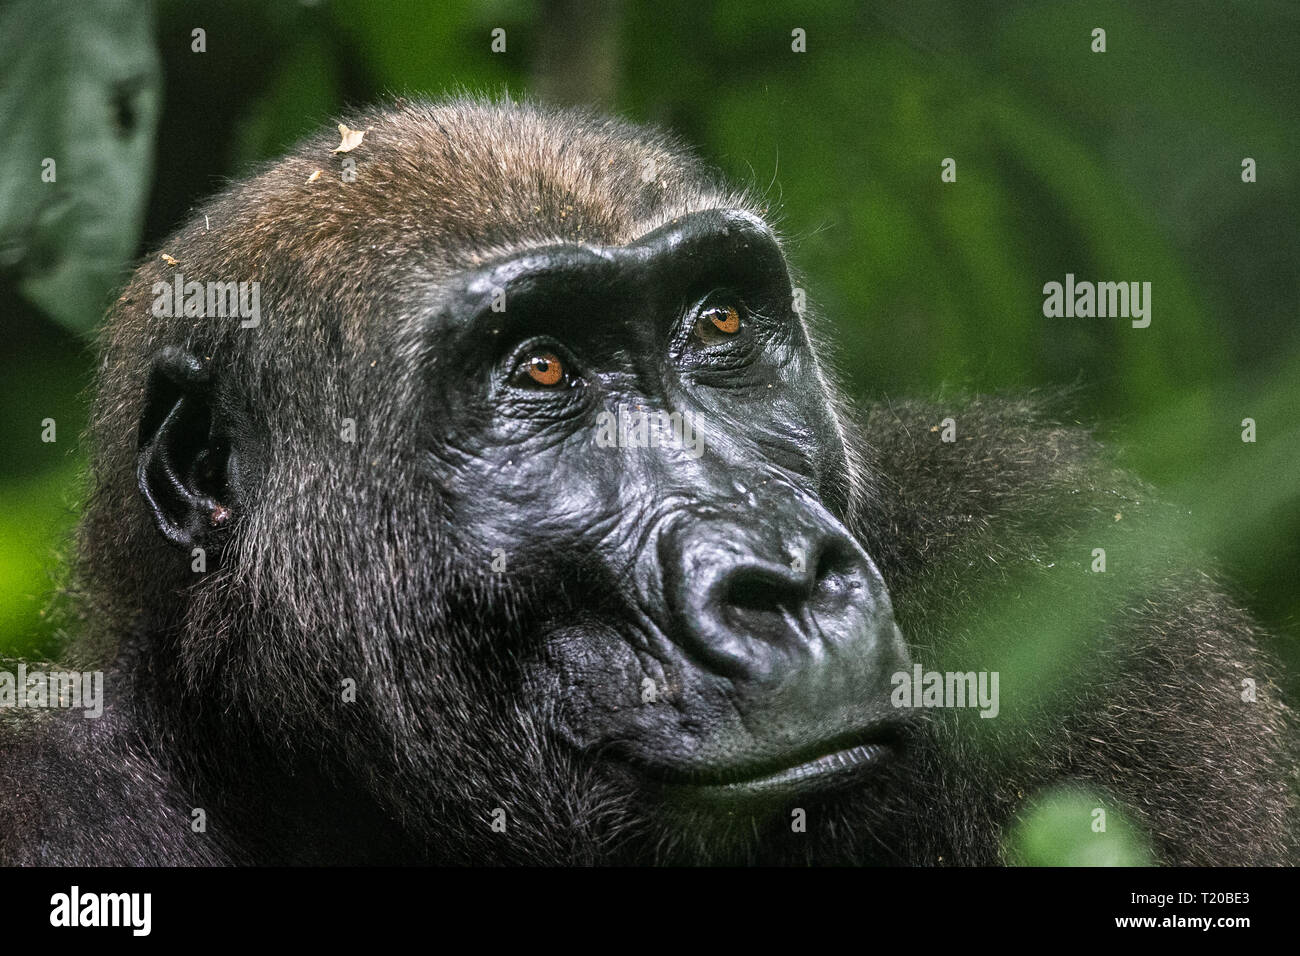 Les gorilles dans le Parc National de Loango, Gabon Banque D'Images